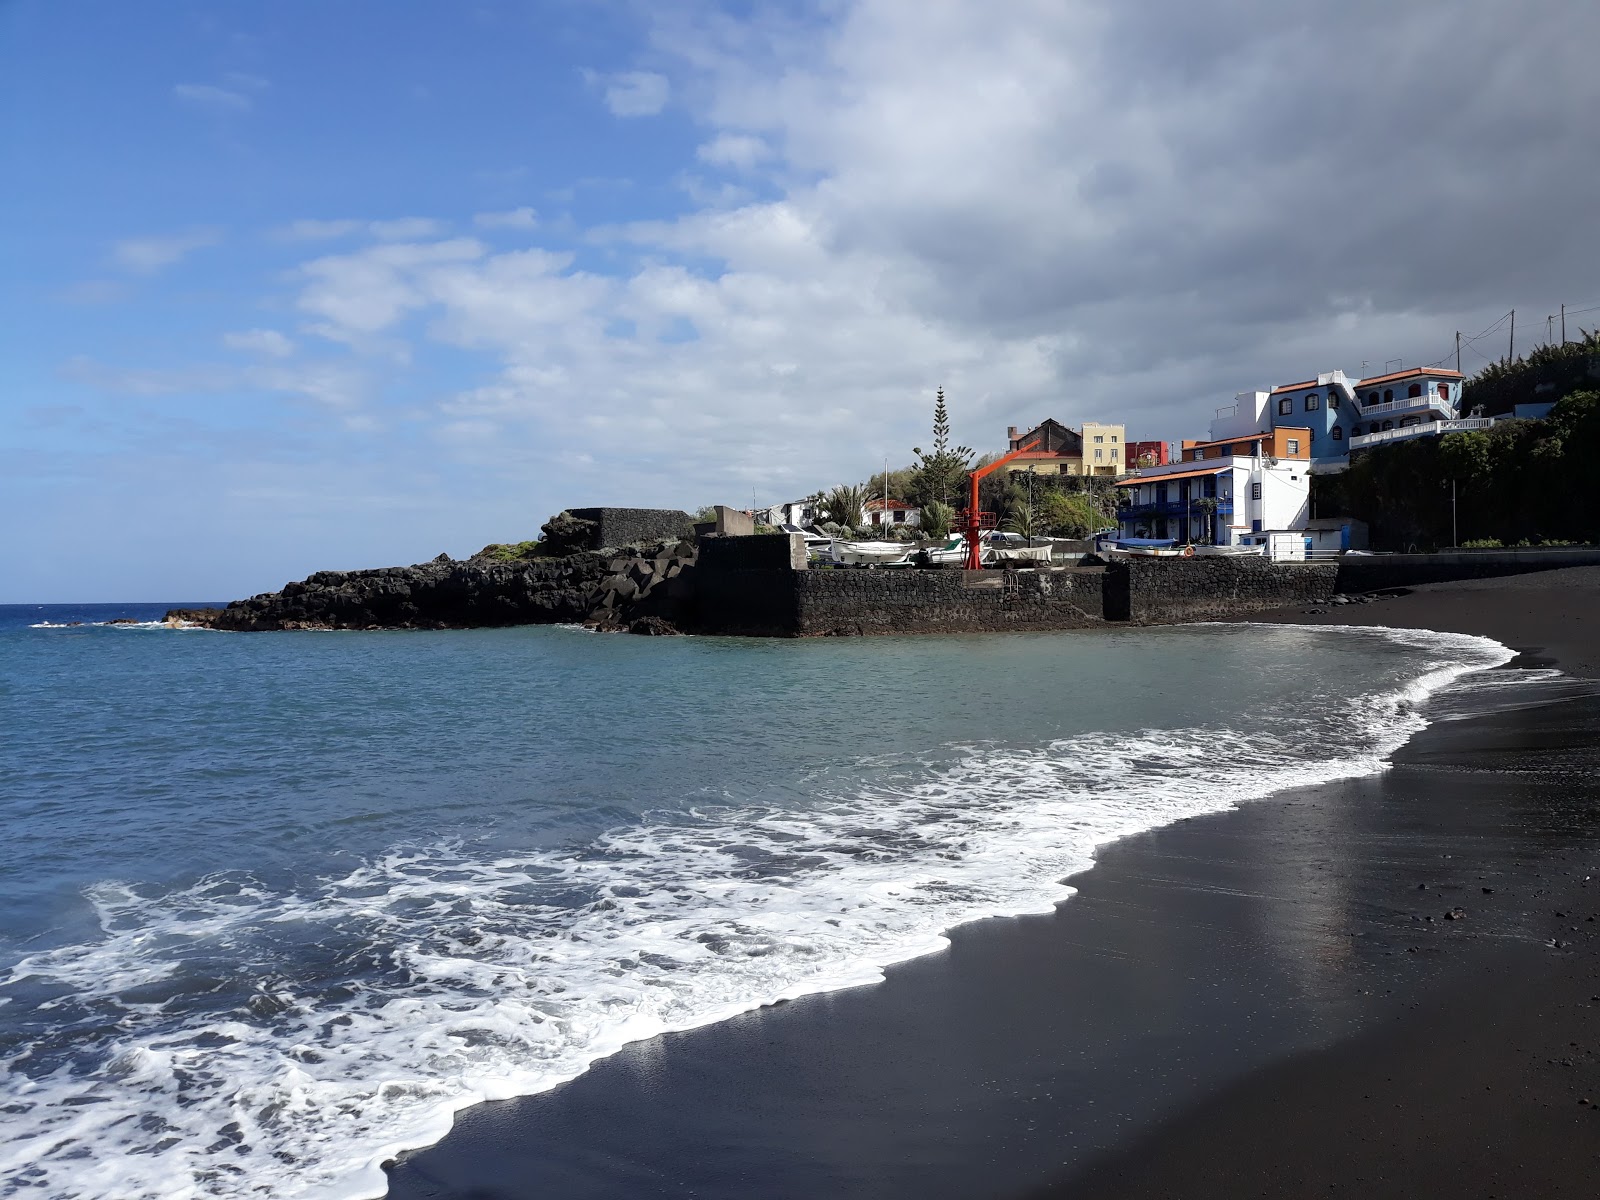 Puerto Espindola'in fotoğrafı küçük koy ile birlikte